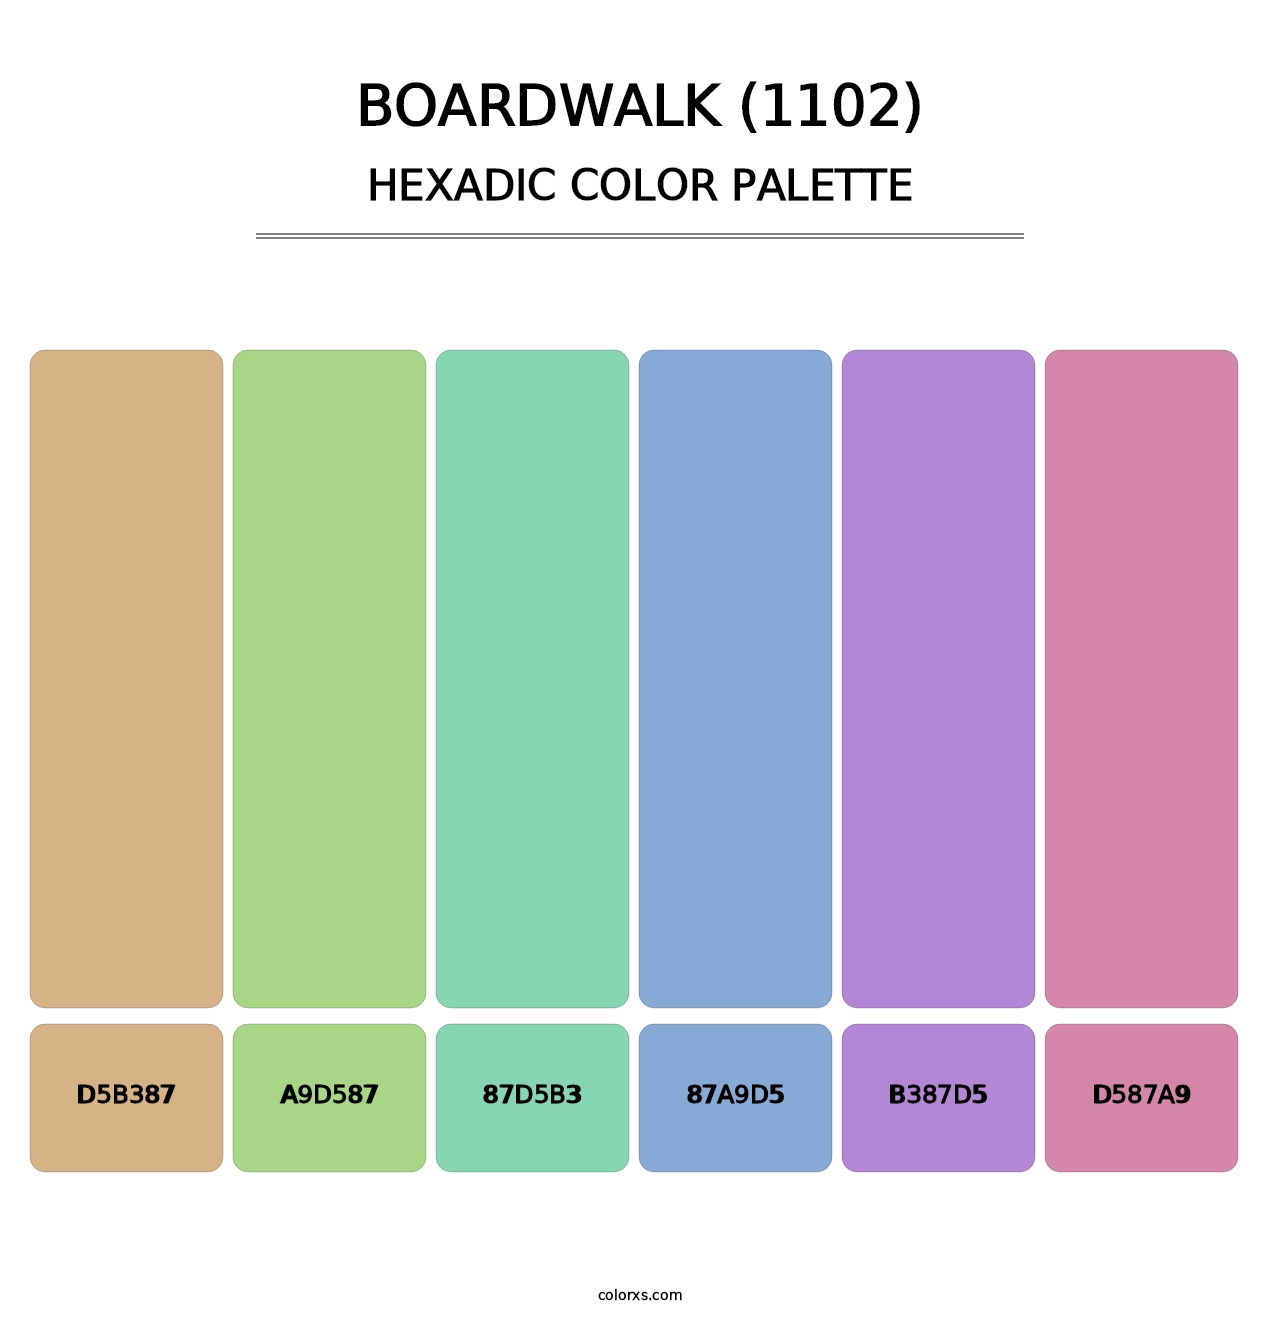 Boardwalk (1102) - Hexadic Color Palette